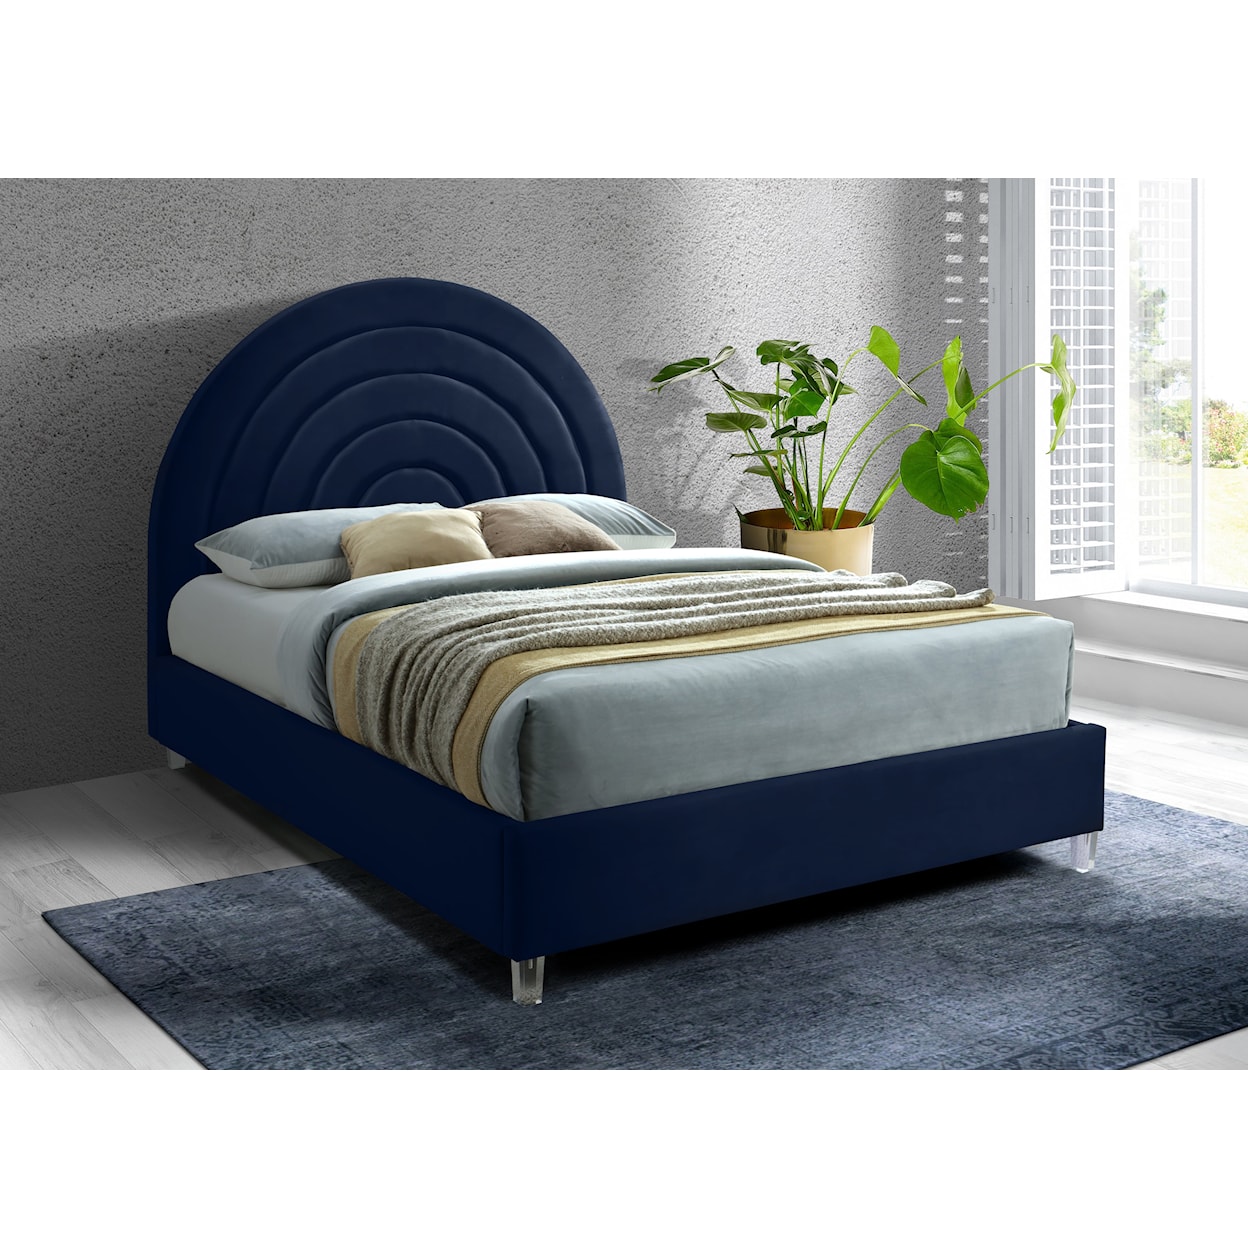 Meridian Furniture Rainbow Queen Bed